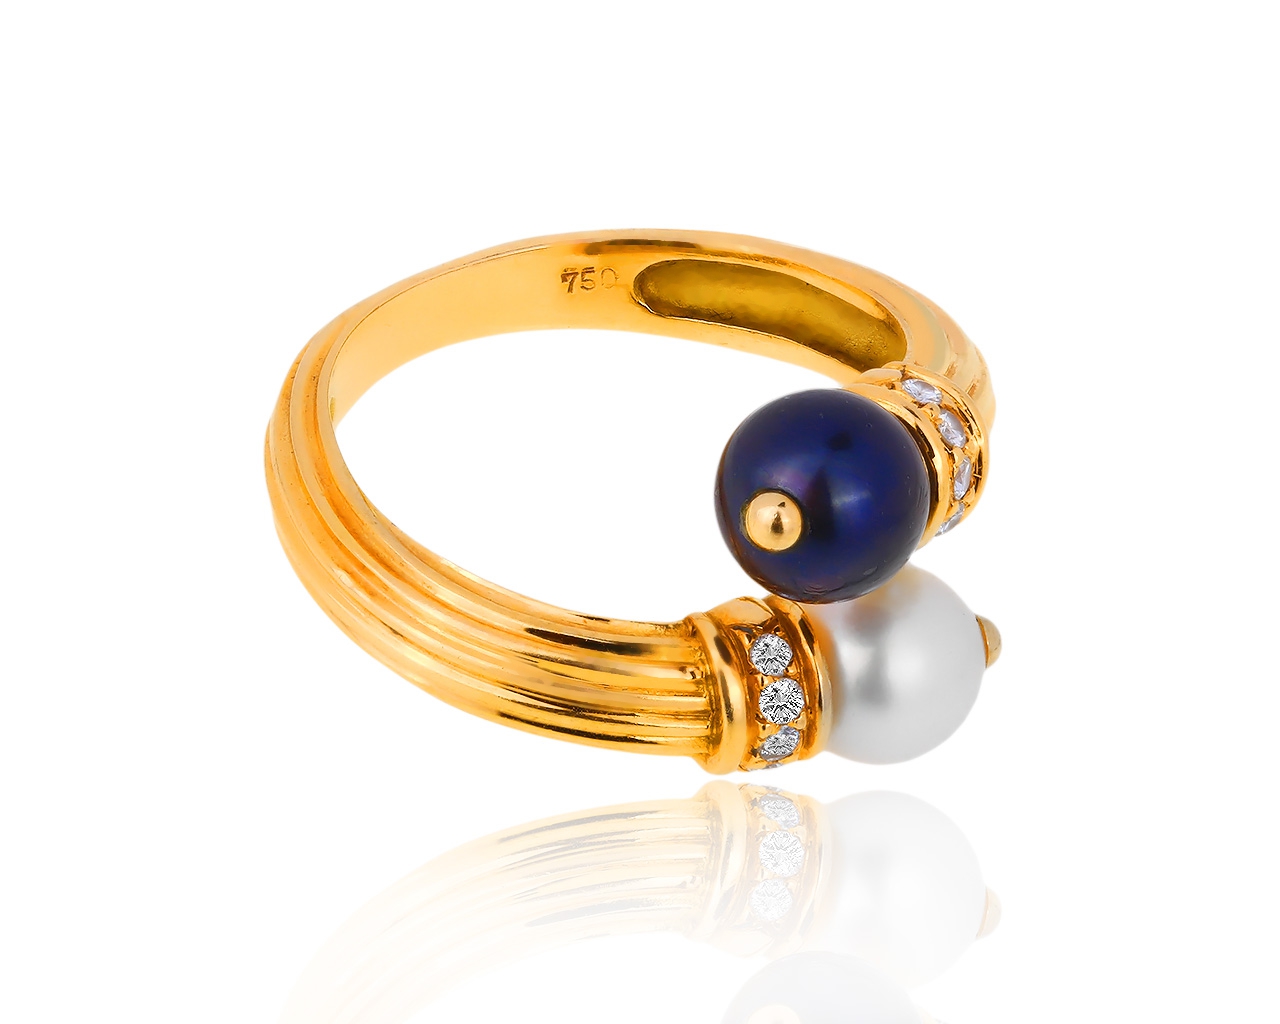 Оригинальное золотое кольцо с жемчугом и бриллиантами O.J.Perrin 211218/4